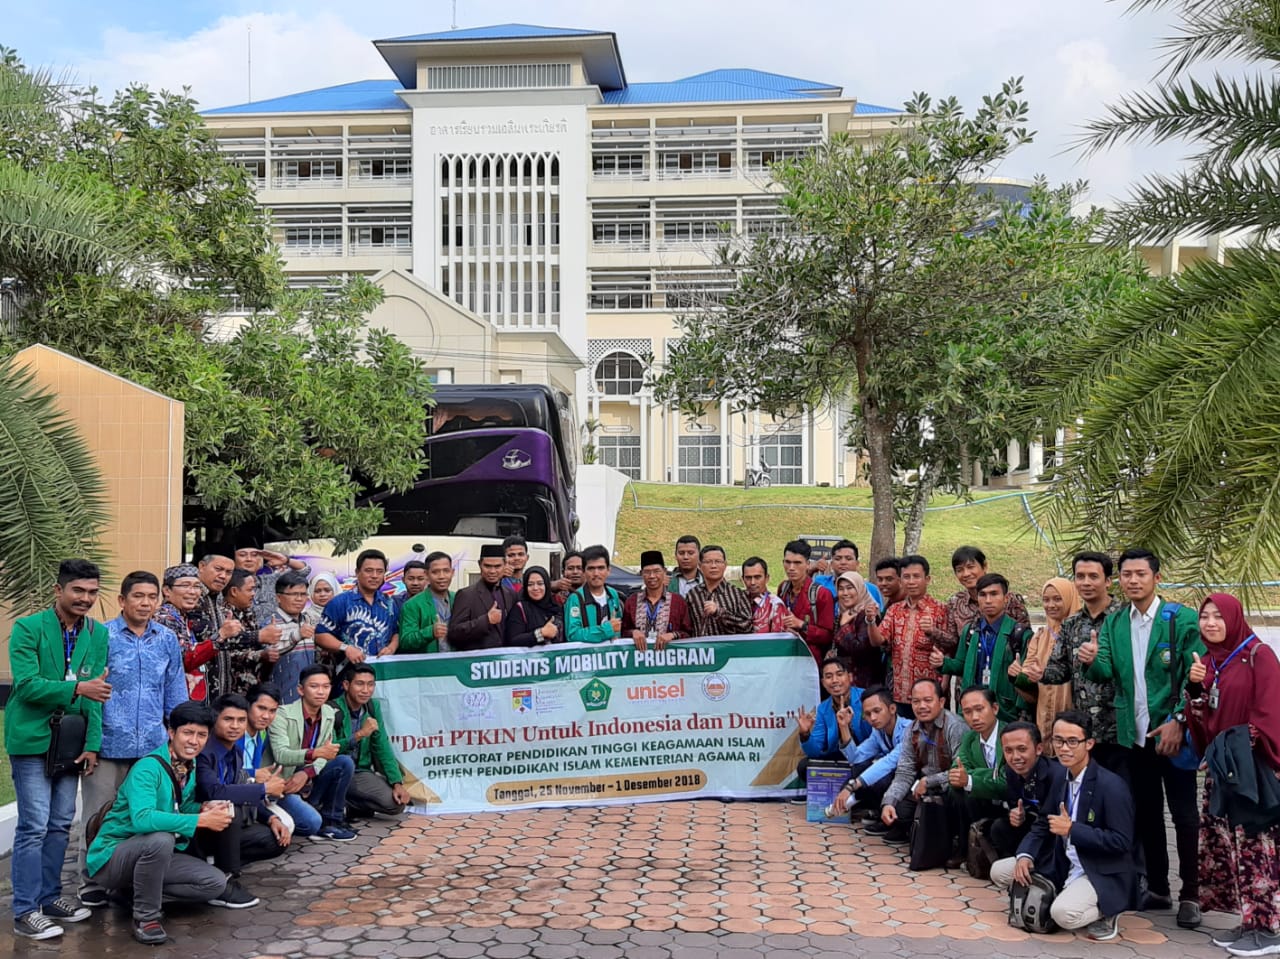 Student Mobility Program, Dari PTKIN Untuk Indonesia dan Dunia